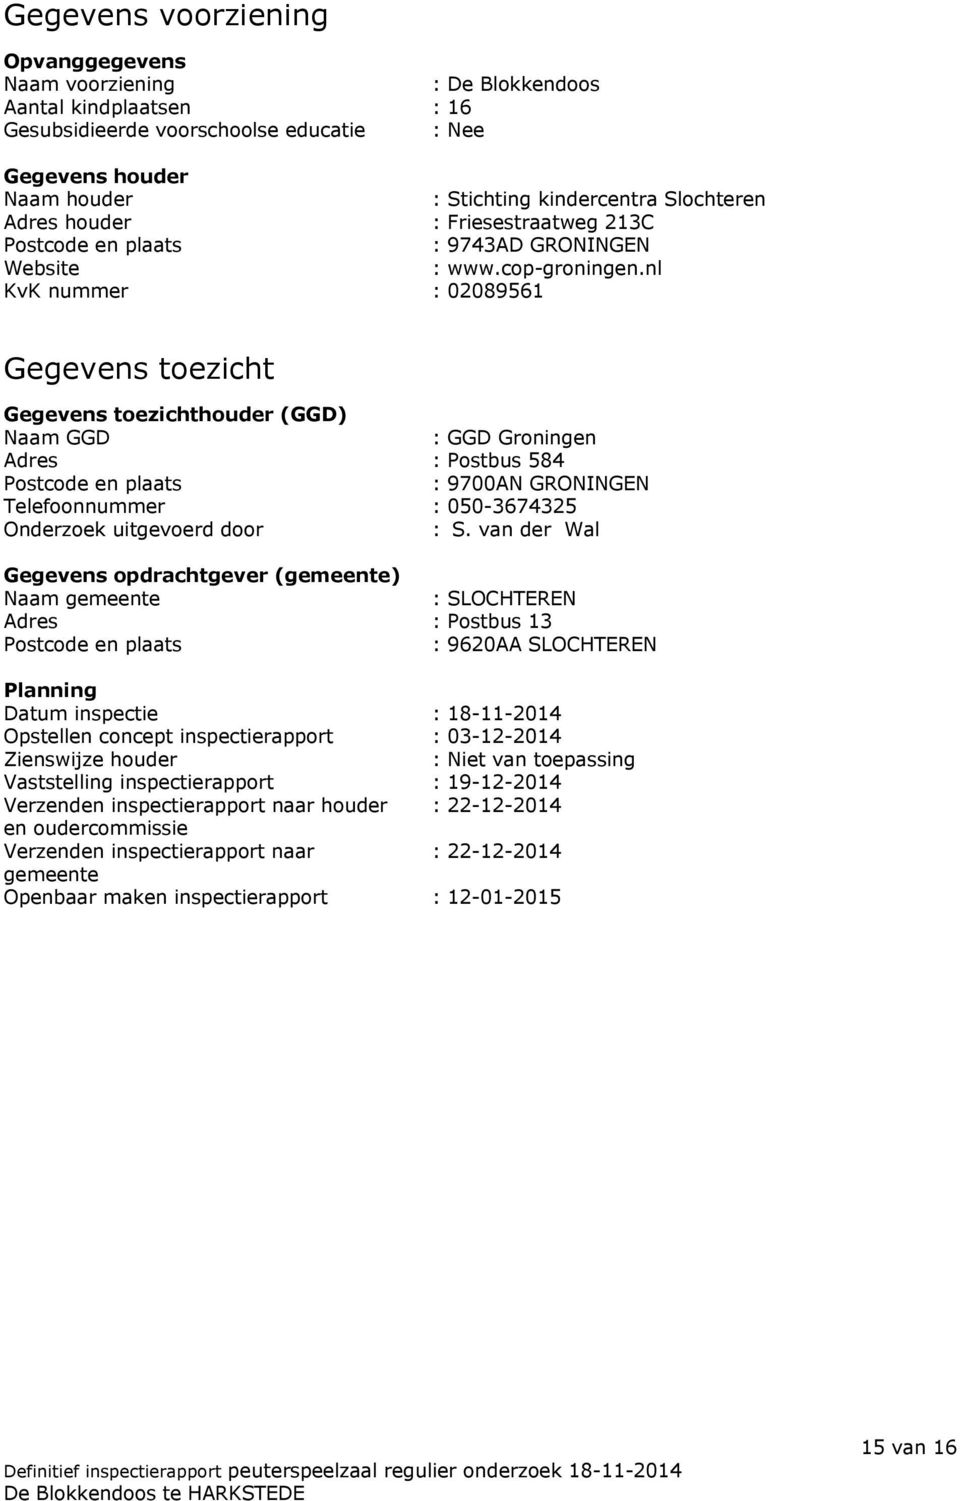 nl KvK nummer : 02089561 Gegevens toezicht Gegevens toezichthouder (GGD) Naam GGD : GGD Groningen Adres : Postbus 584 Postcode en plaats : 9700AN GRONINGEN Telefoonnummer : 050-3674325 Onderzoek